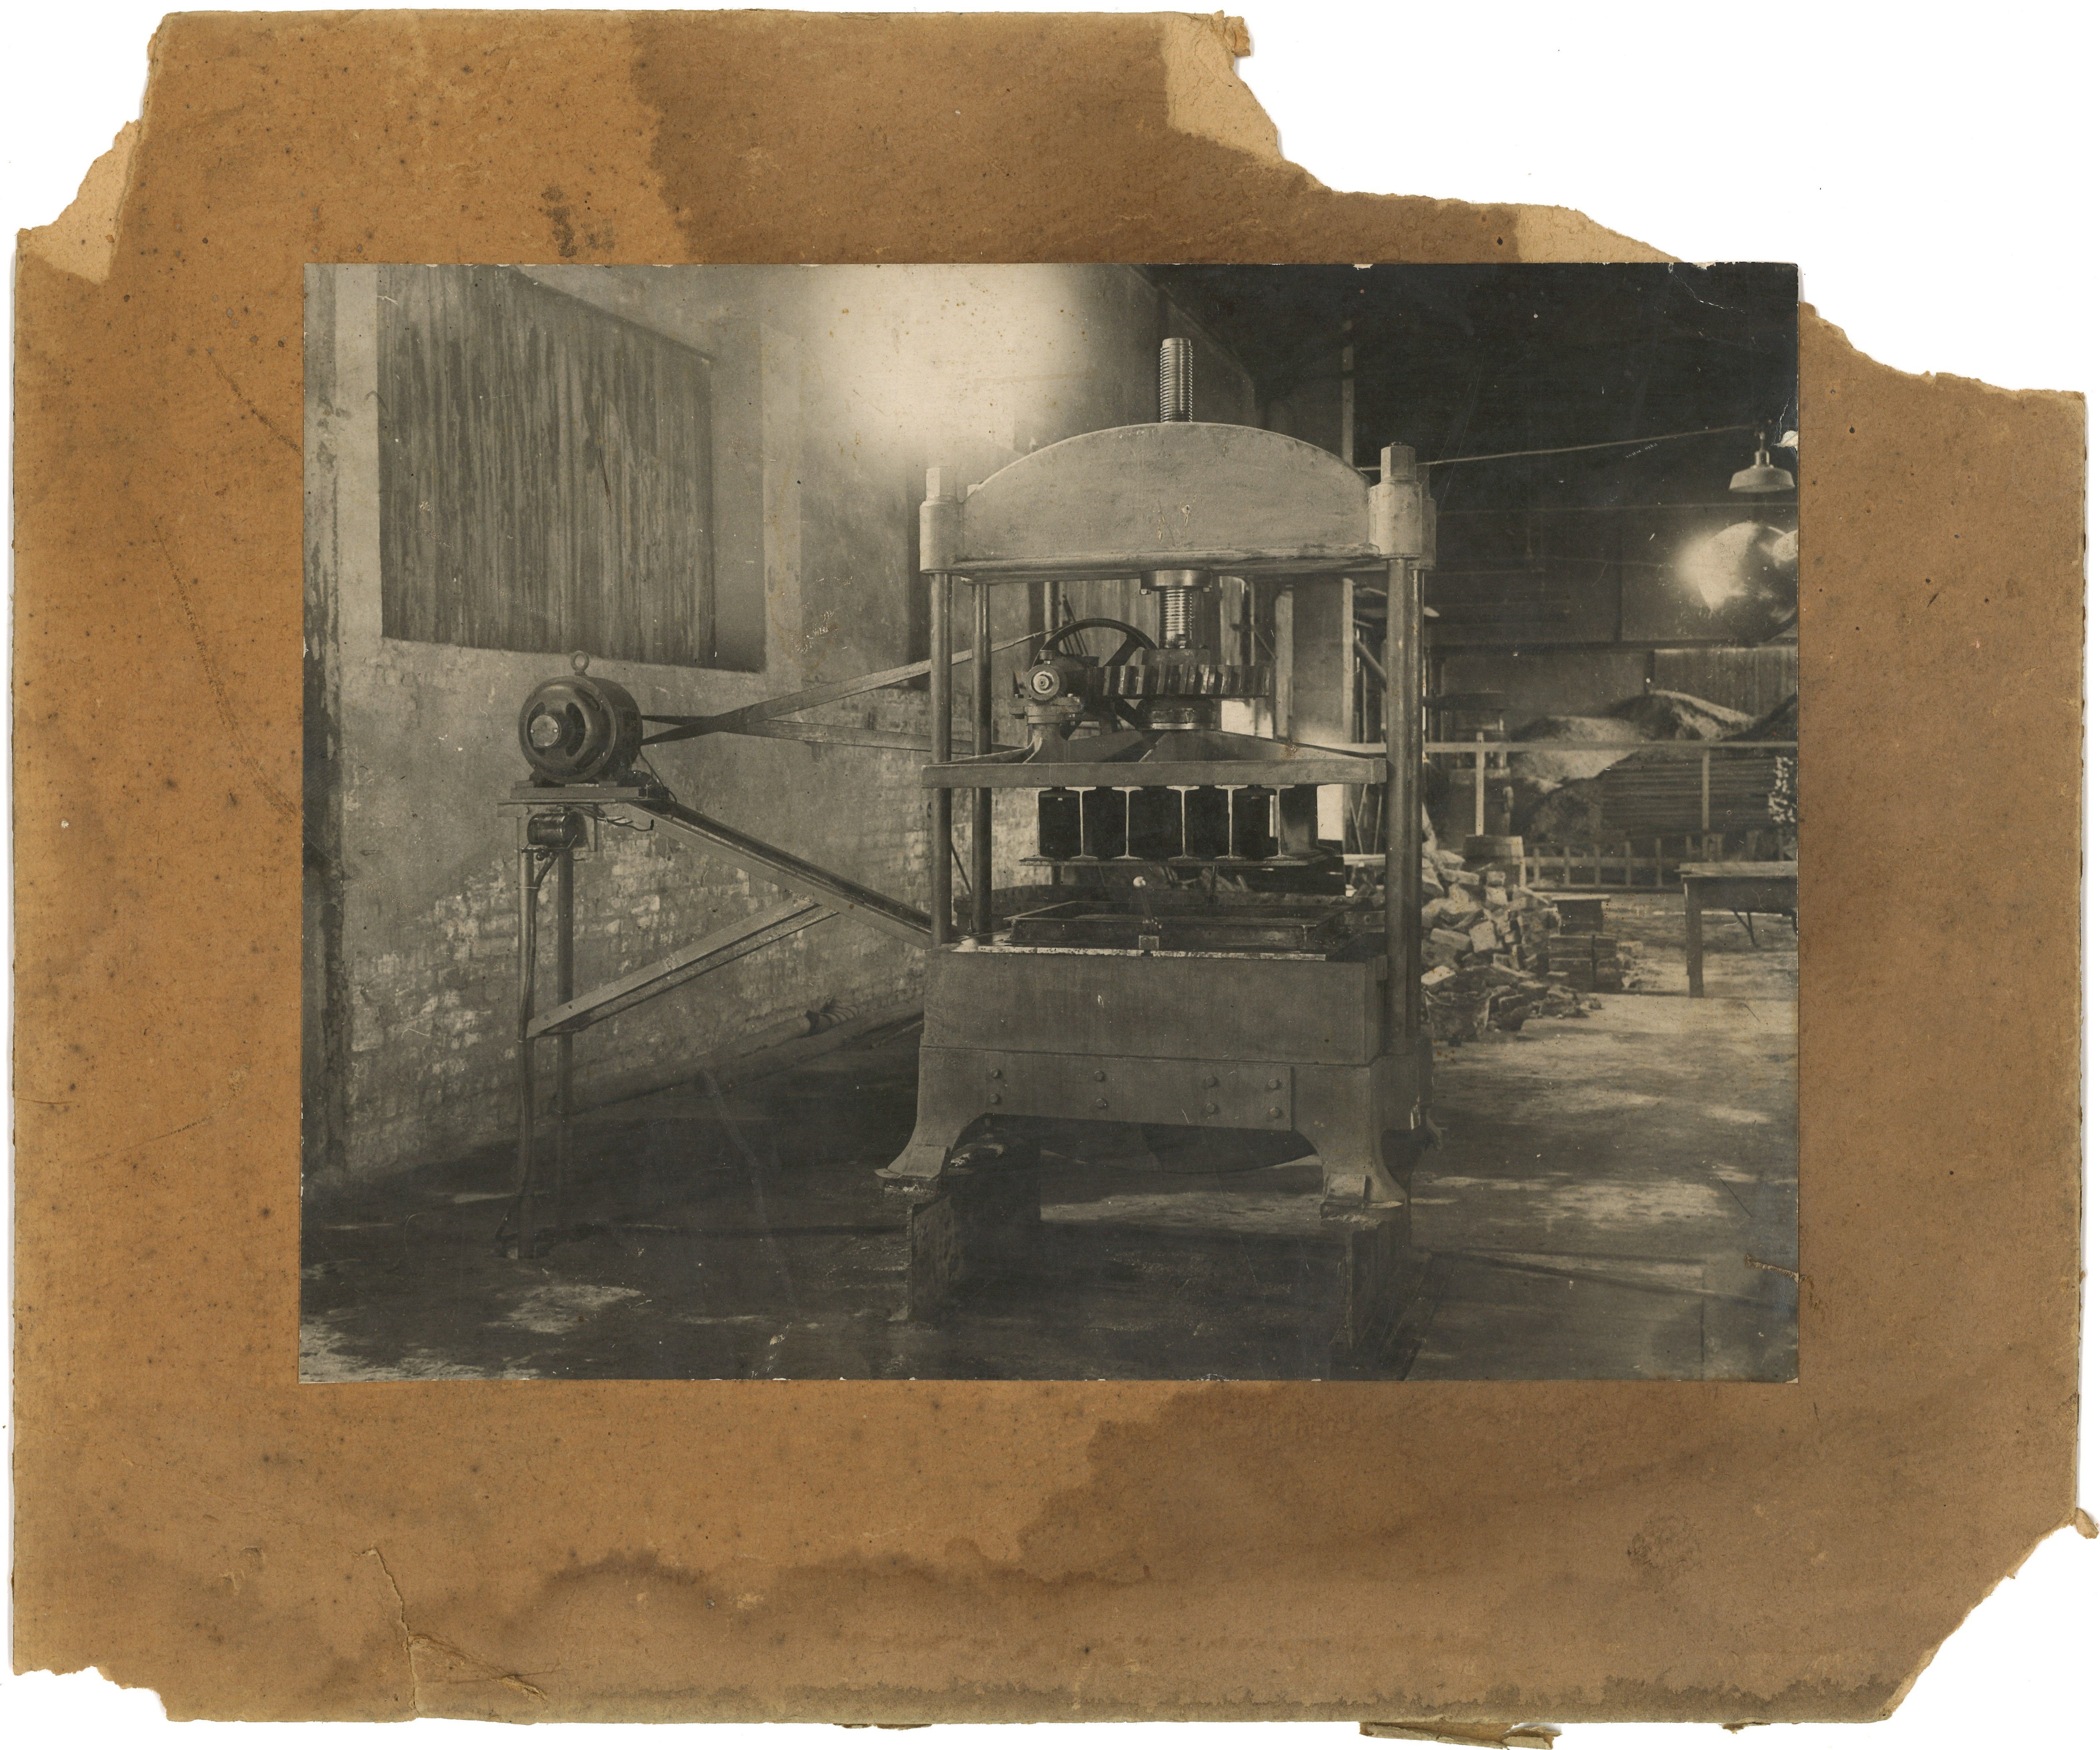 Motorgetriebene Pressmaschine (Landesgeschichtliche Vereinigung für die Mark Brandenburg e.V., Archiv CC BY)